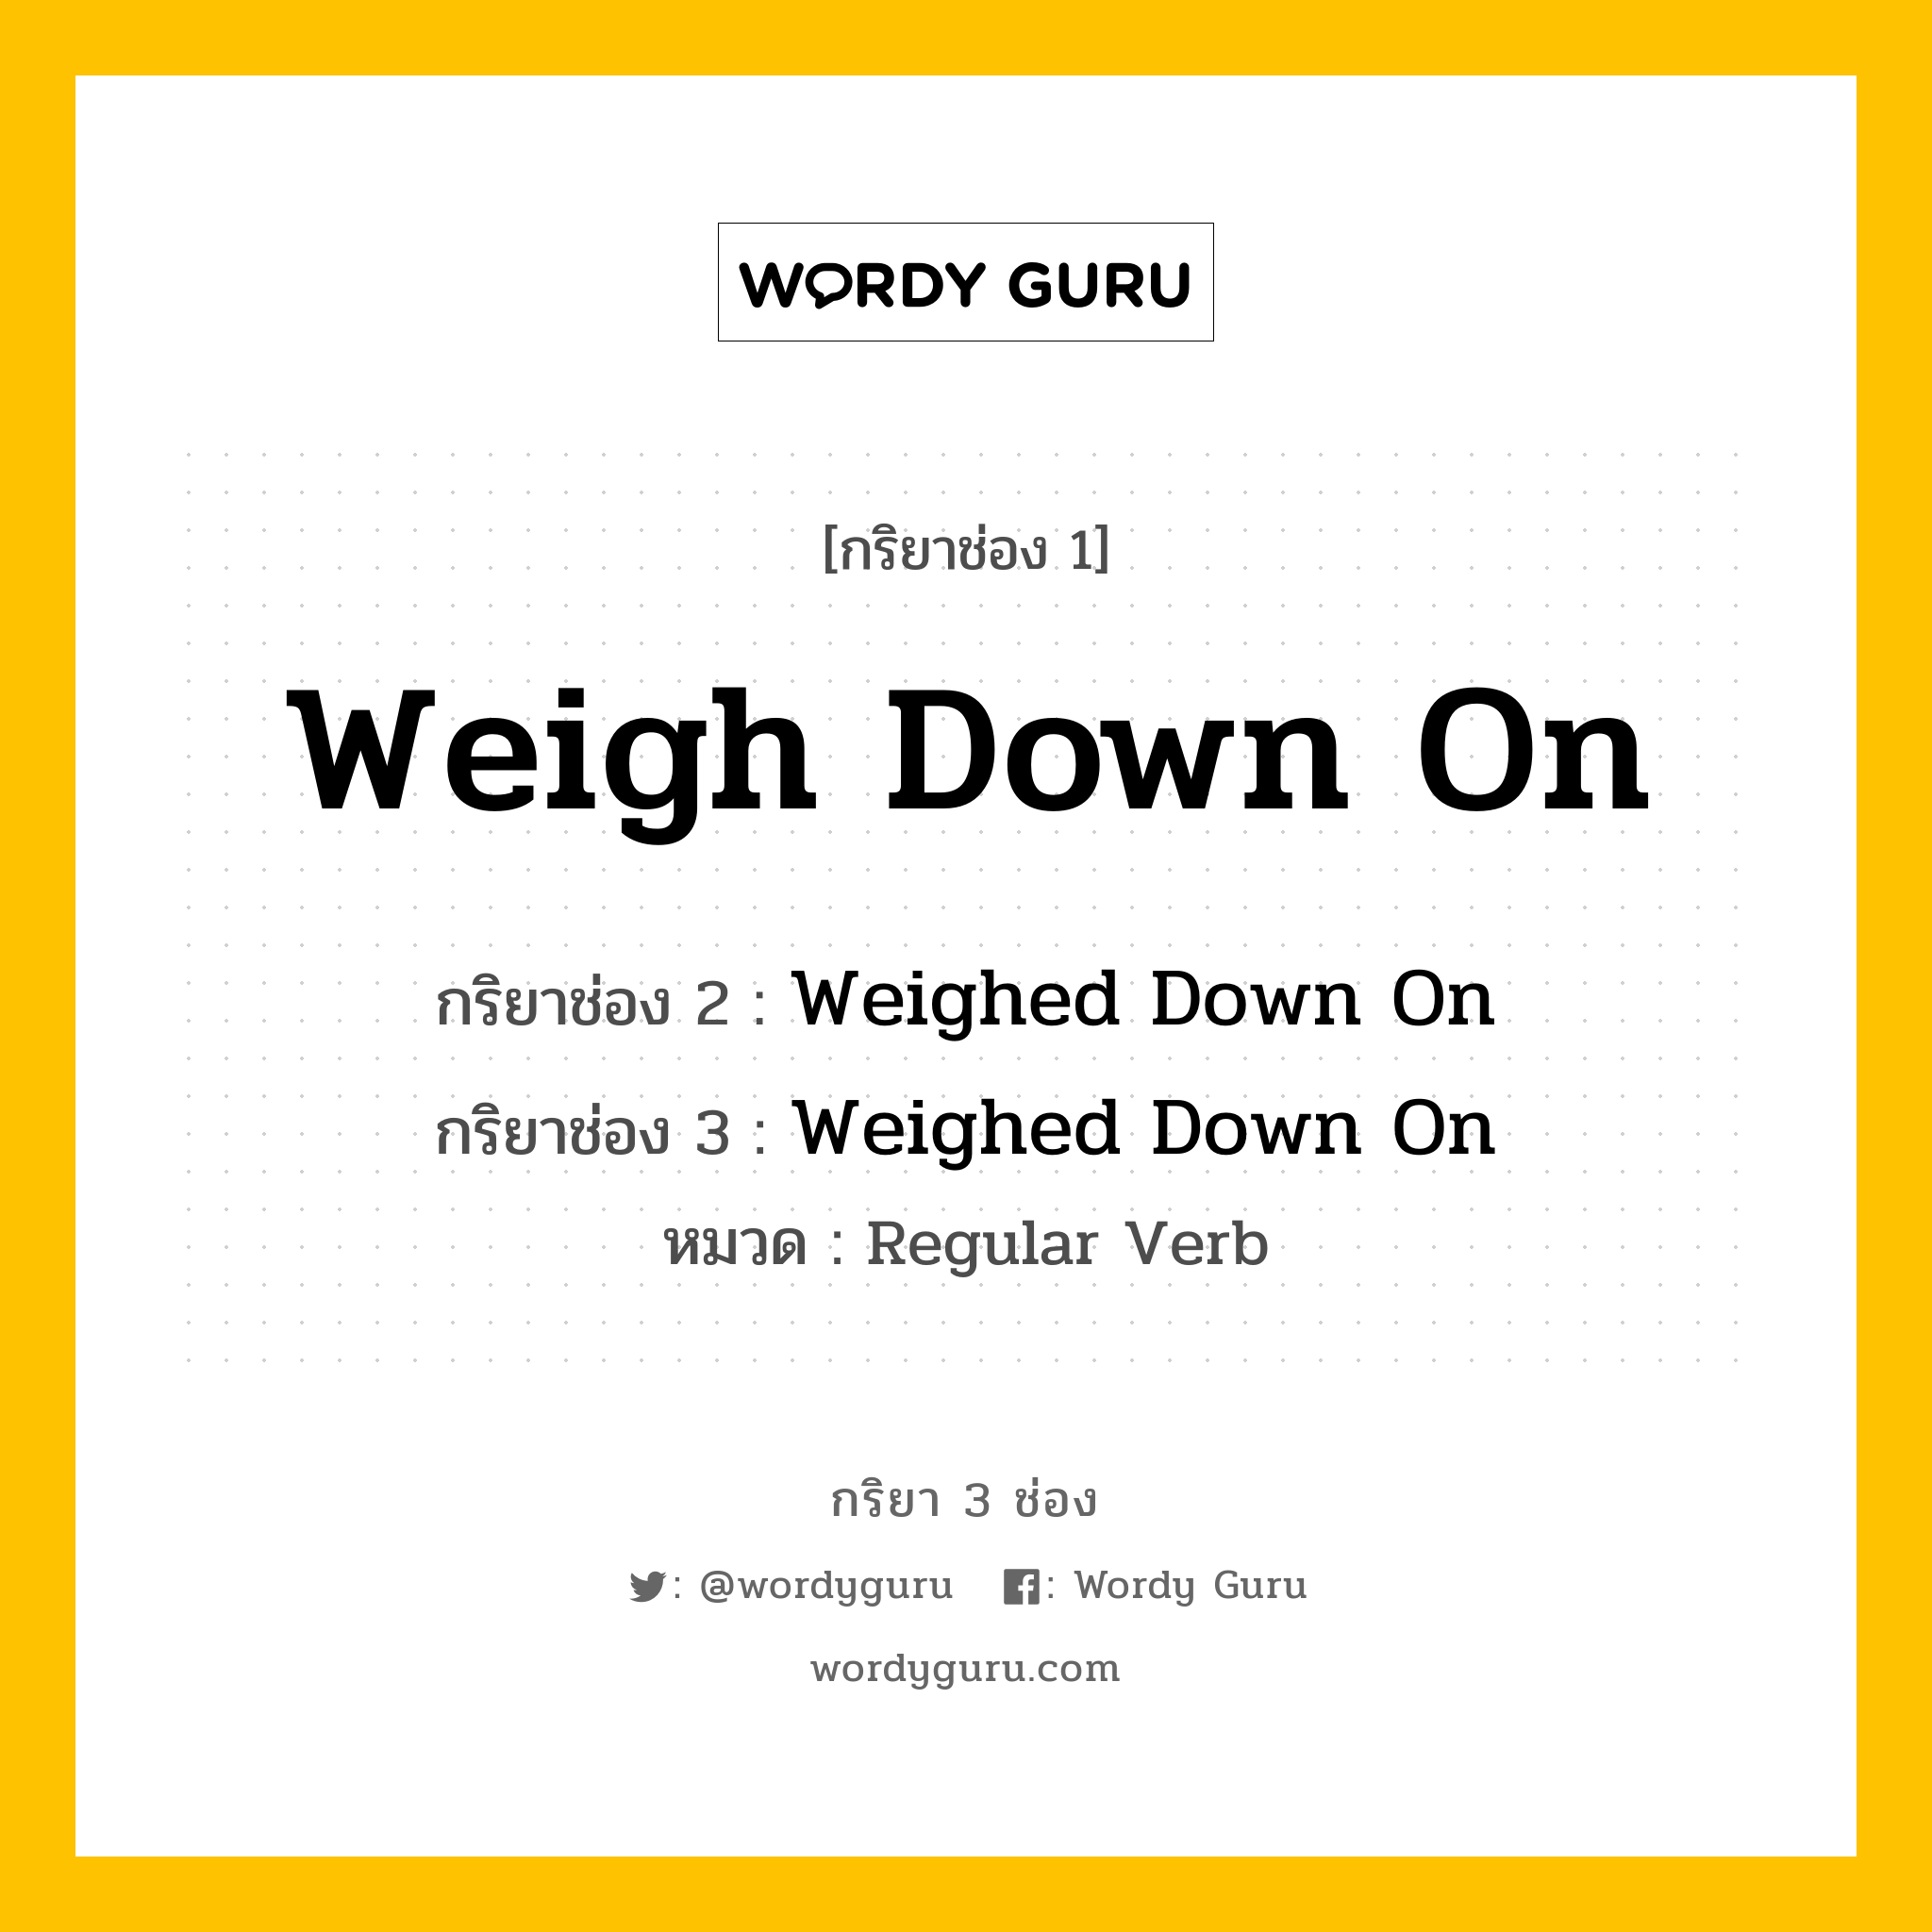 กริยา 3 ช่อง: Weigh Down On ช่อง 2 Weigh Down On ช่อง 3 คืออะไร, กริยาช่อง 1 Weigh Down On กริยาช่อง 2 Weighed Down On กริยาช่อง 3 Weighed Down On หมวด Regular Verb หมวด Regular Verb